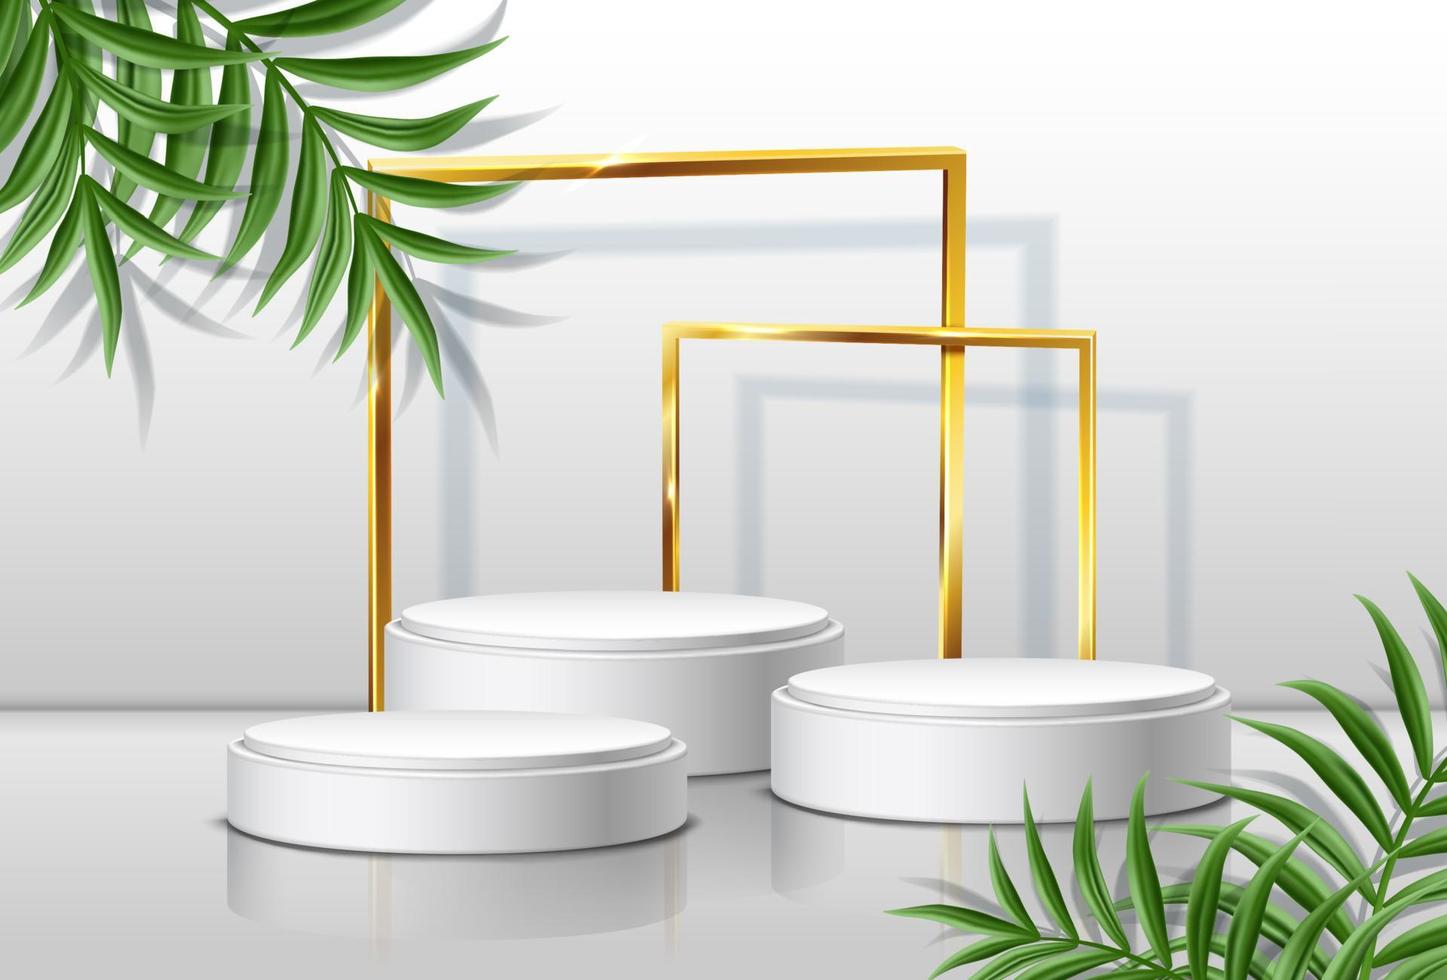 Fondo vectorial 3d realista con escenarios redondos y marcos dorados con hojas tropicales a los lados. vector